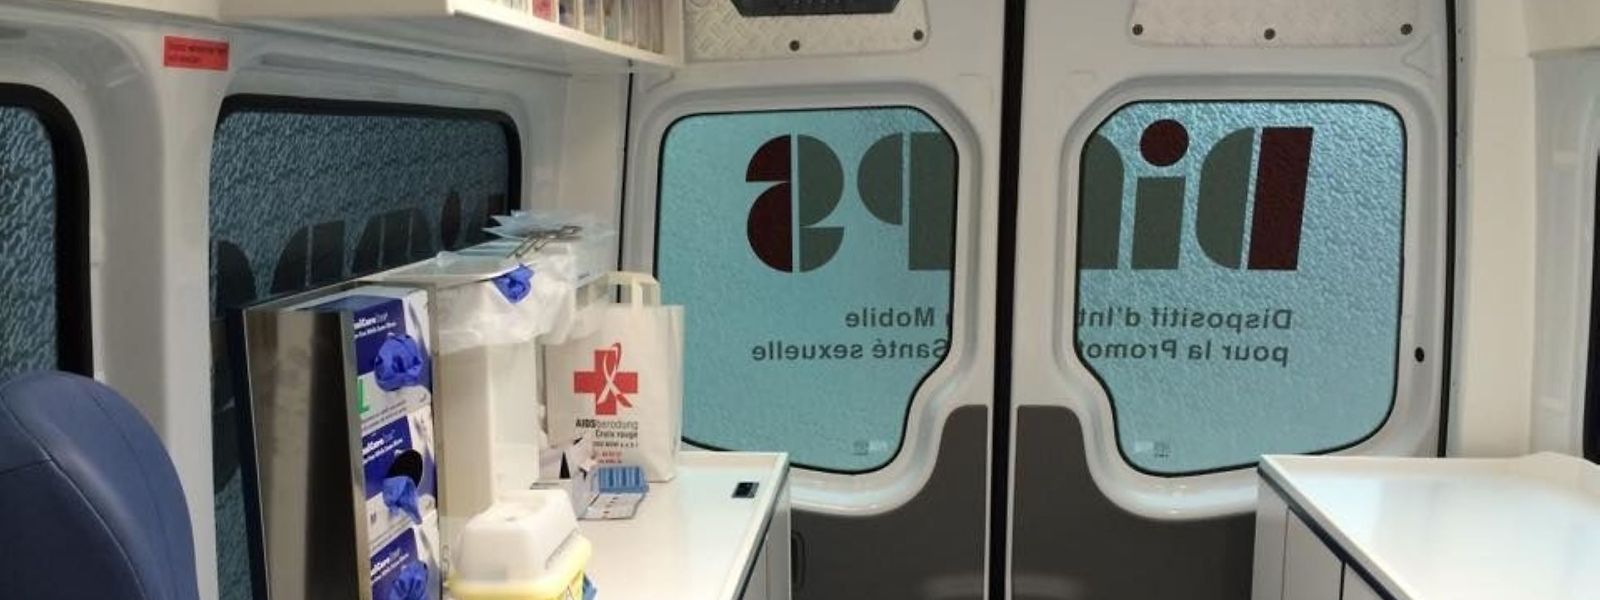 L'unité mobile Dimps du service HIV Berodung de la Croix-Rouge luxembourgeoise.